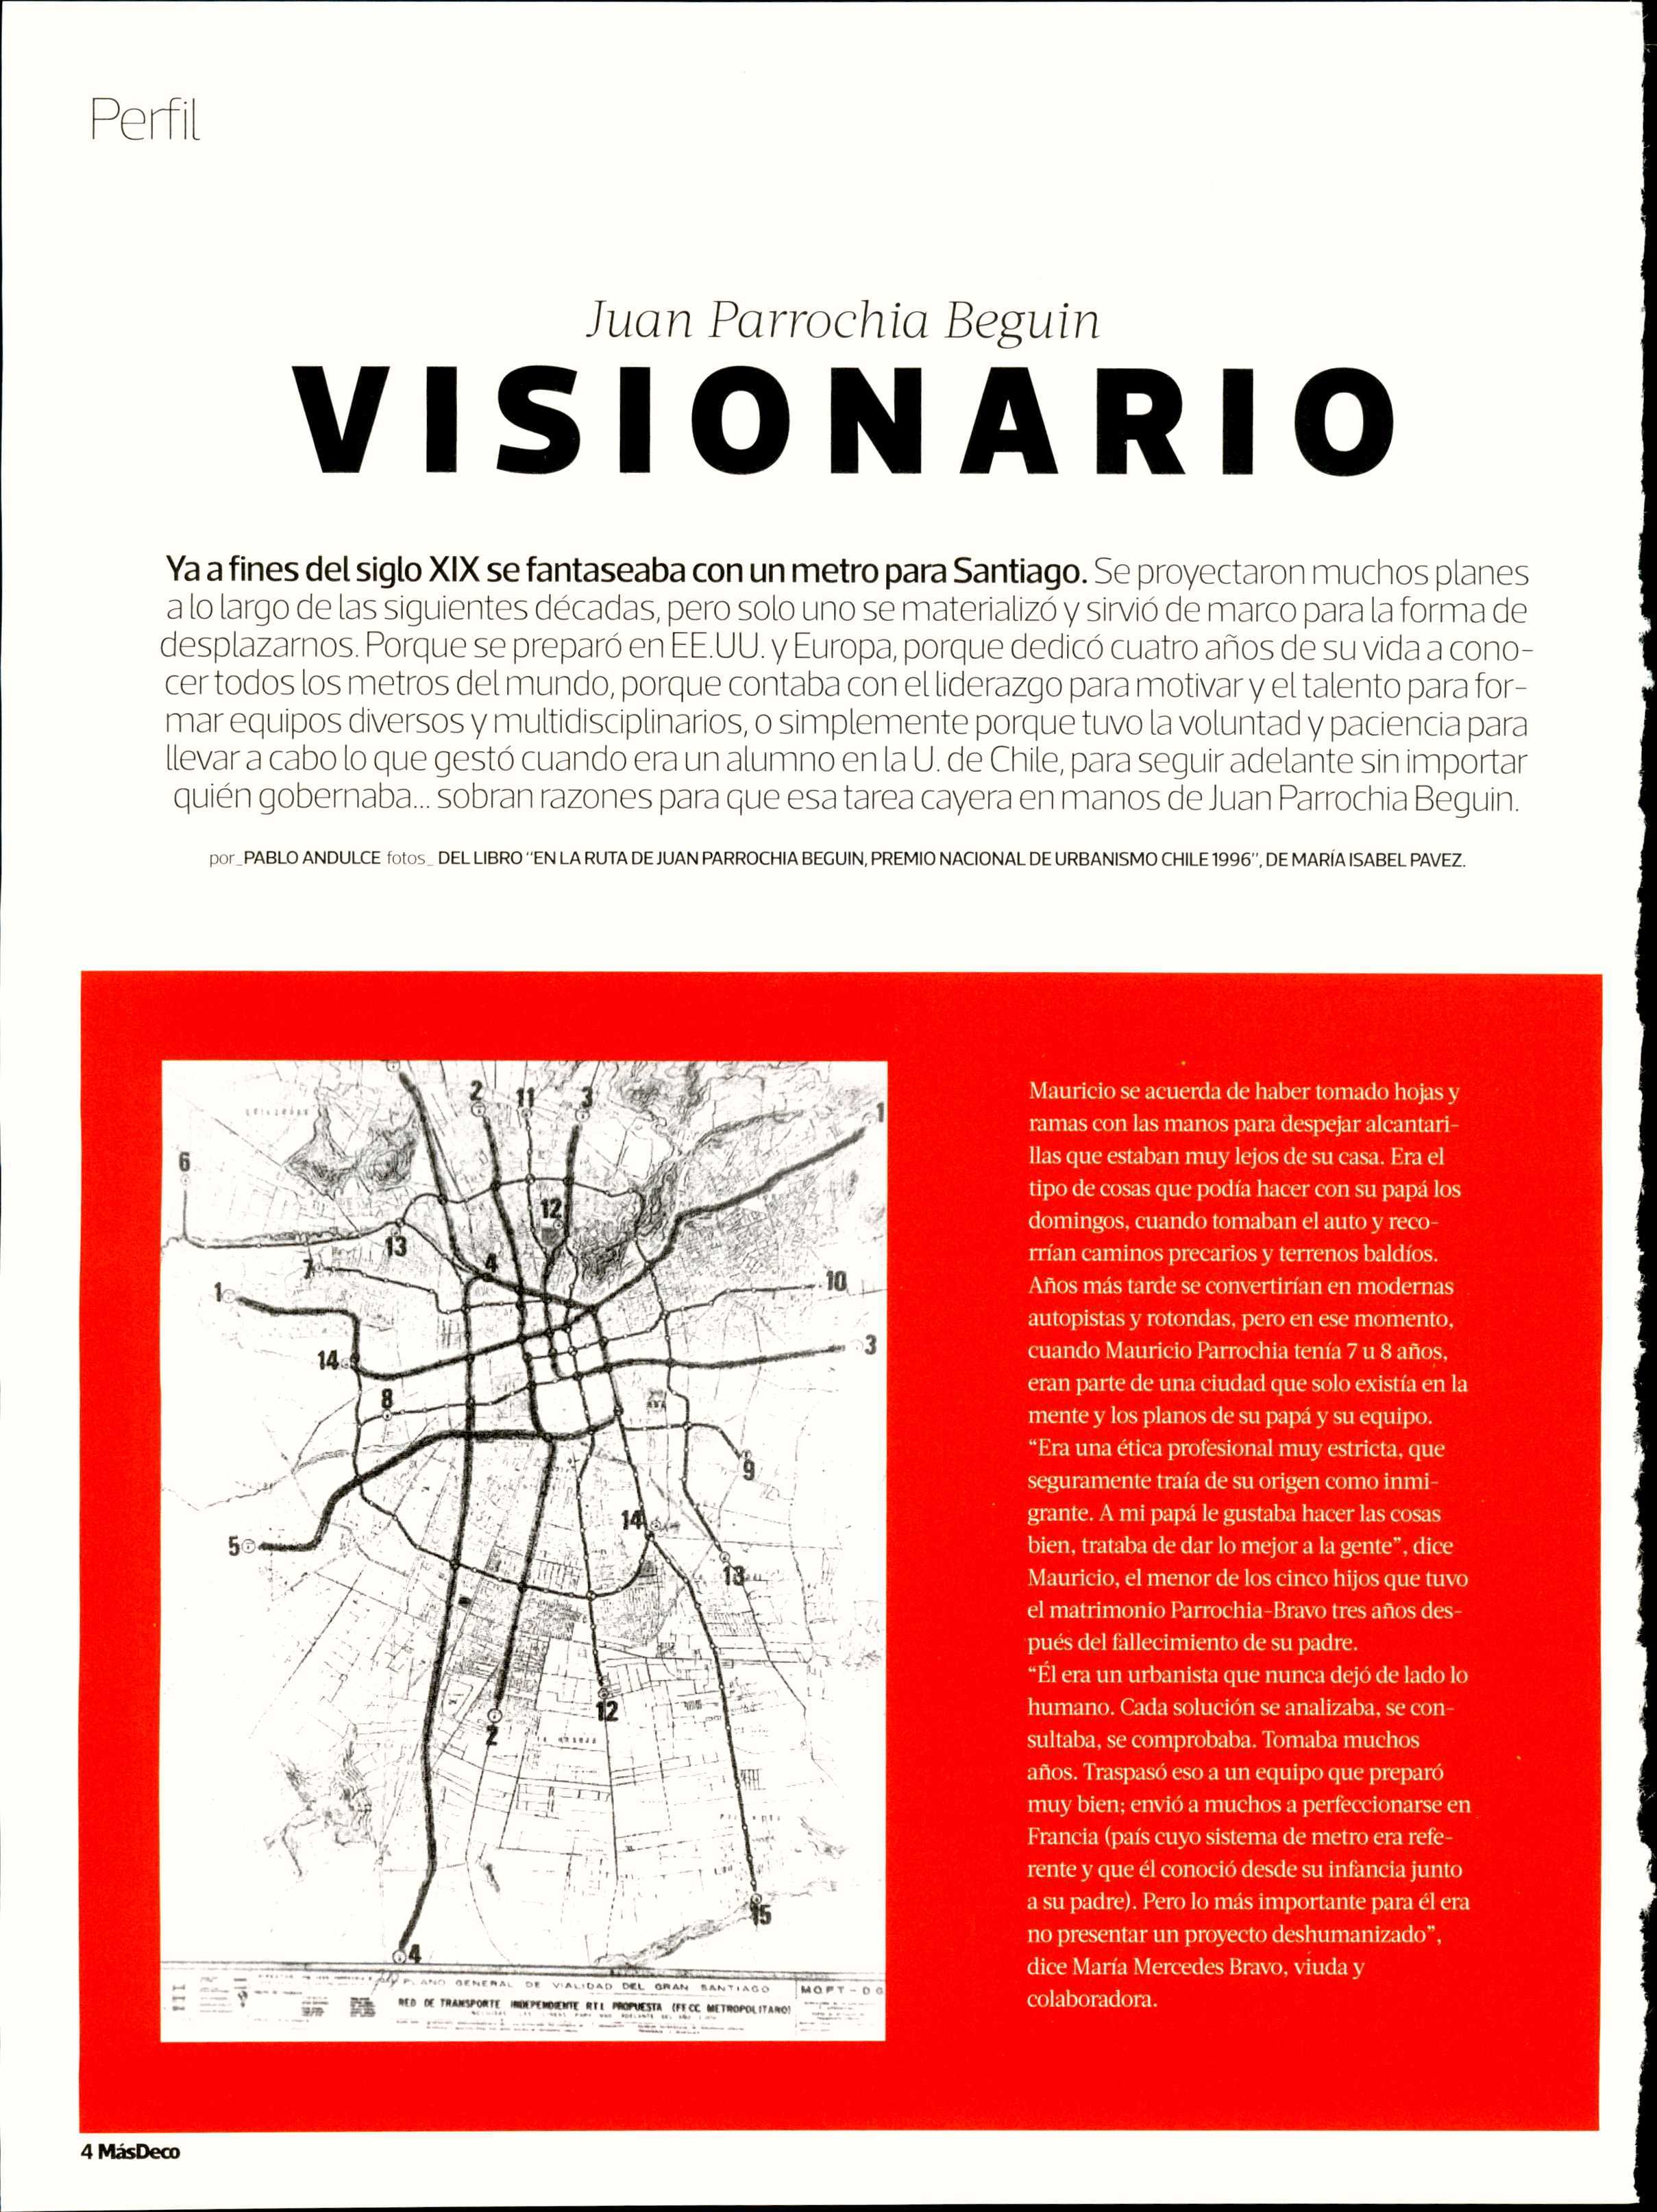 19-03-24_Juan_Parrochia_Beguin-_visionario_Revista_MasDeco_1.JPG